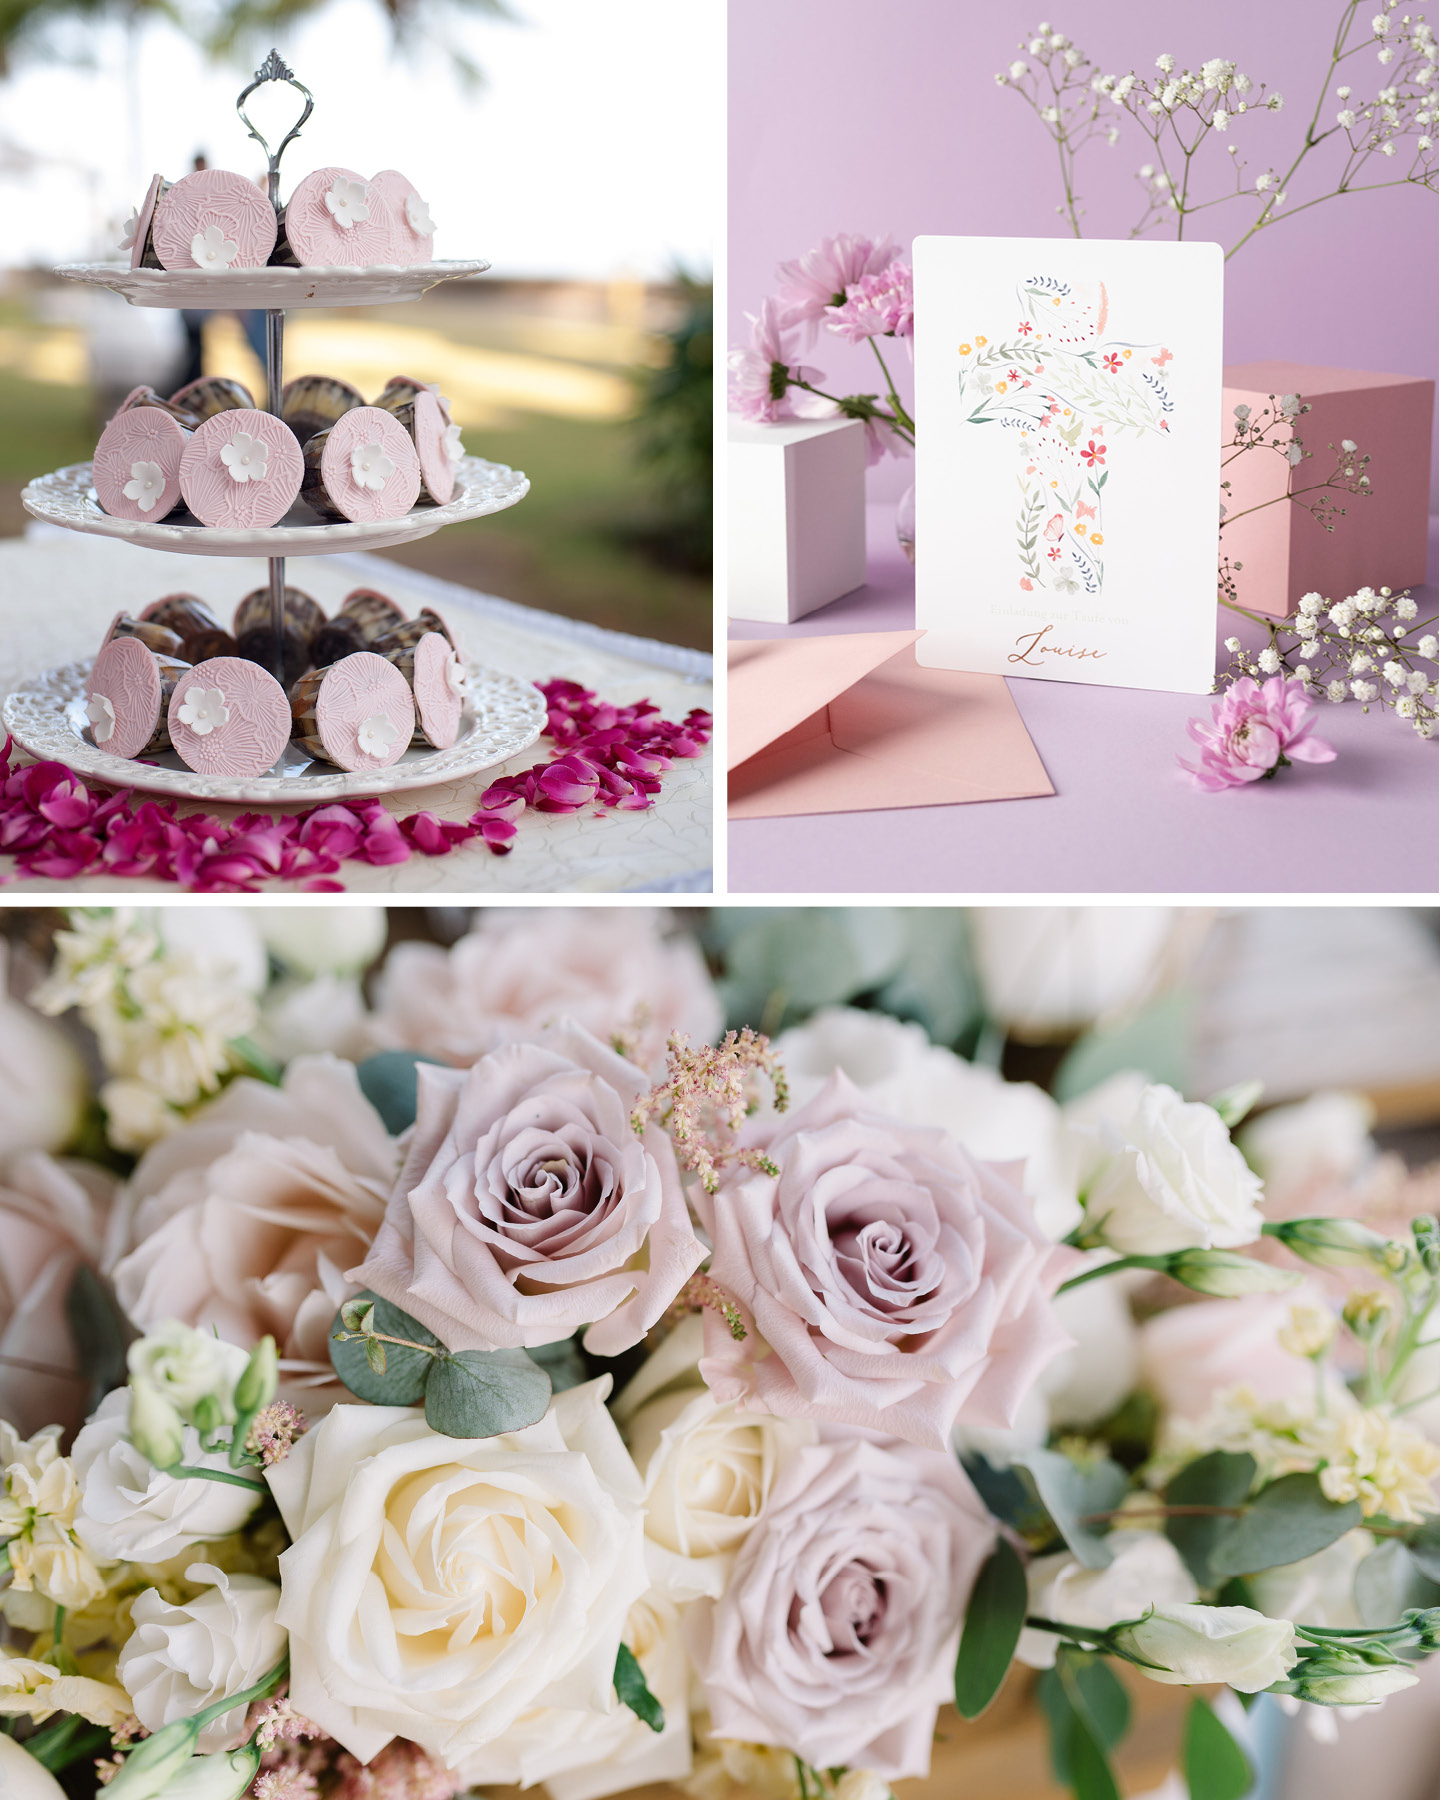 Collage aus Blumen, Etagere mit Süßigkeiten und Taufkarte